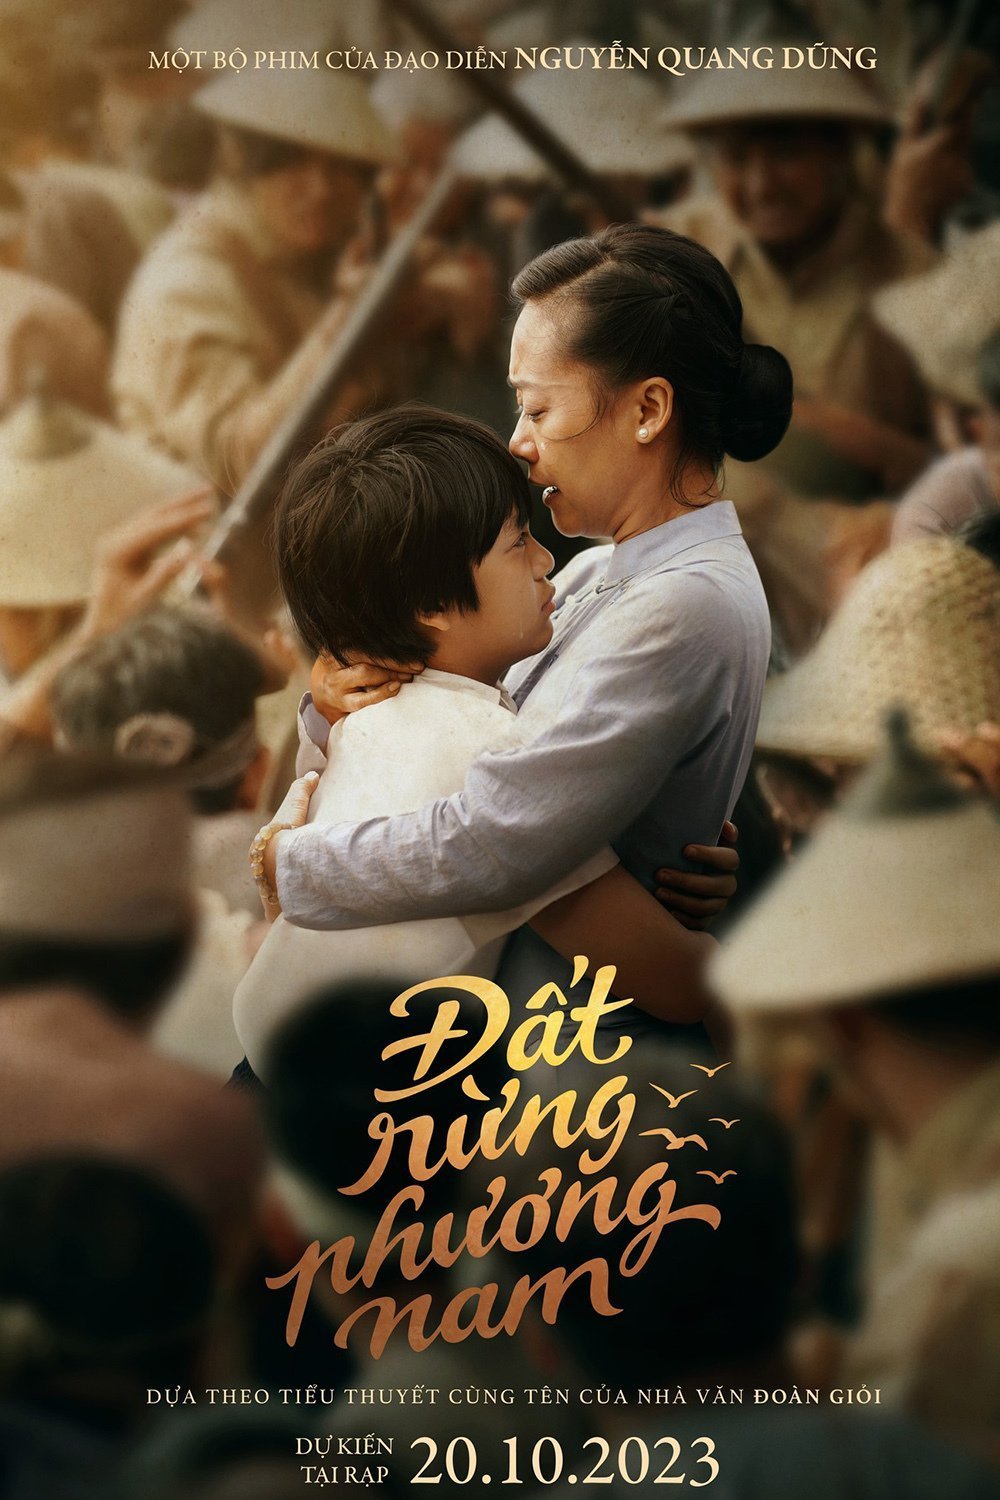 L'affiche originale du film Song of the South en Vietnamien